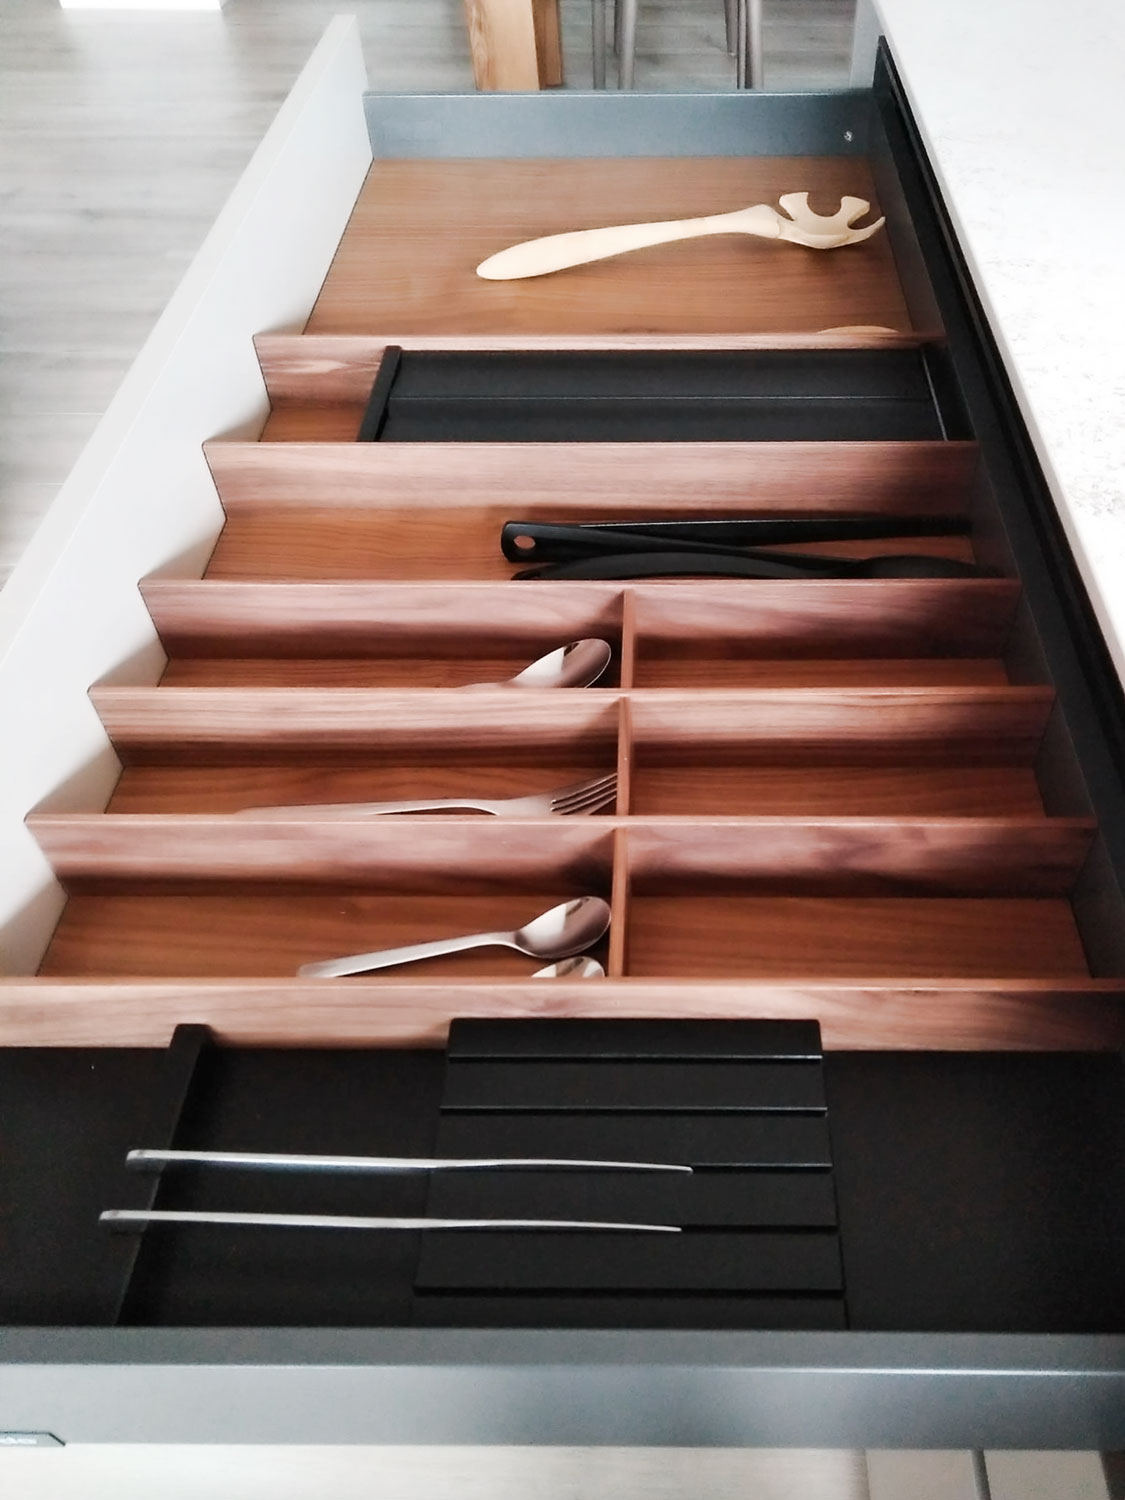 Complementos de madera para organizar los cajones de la cocina